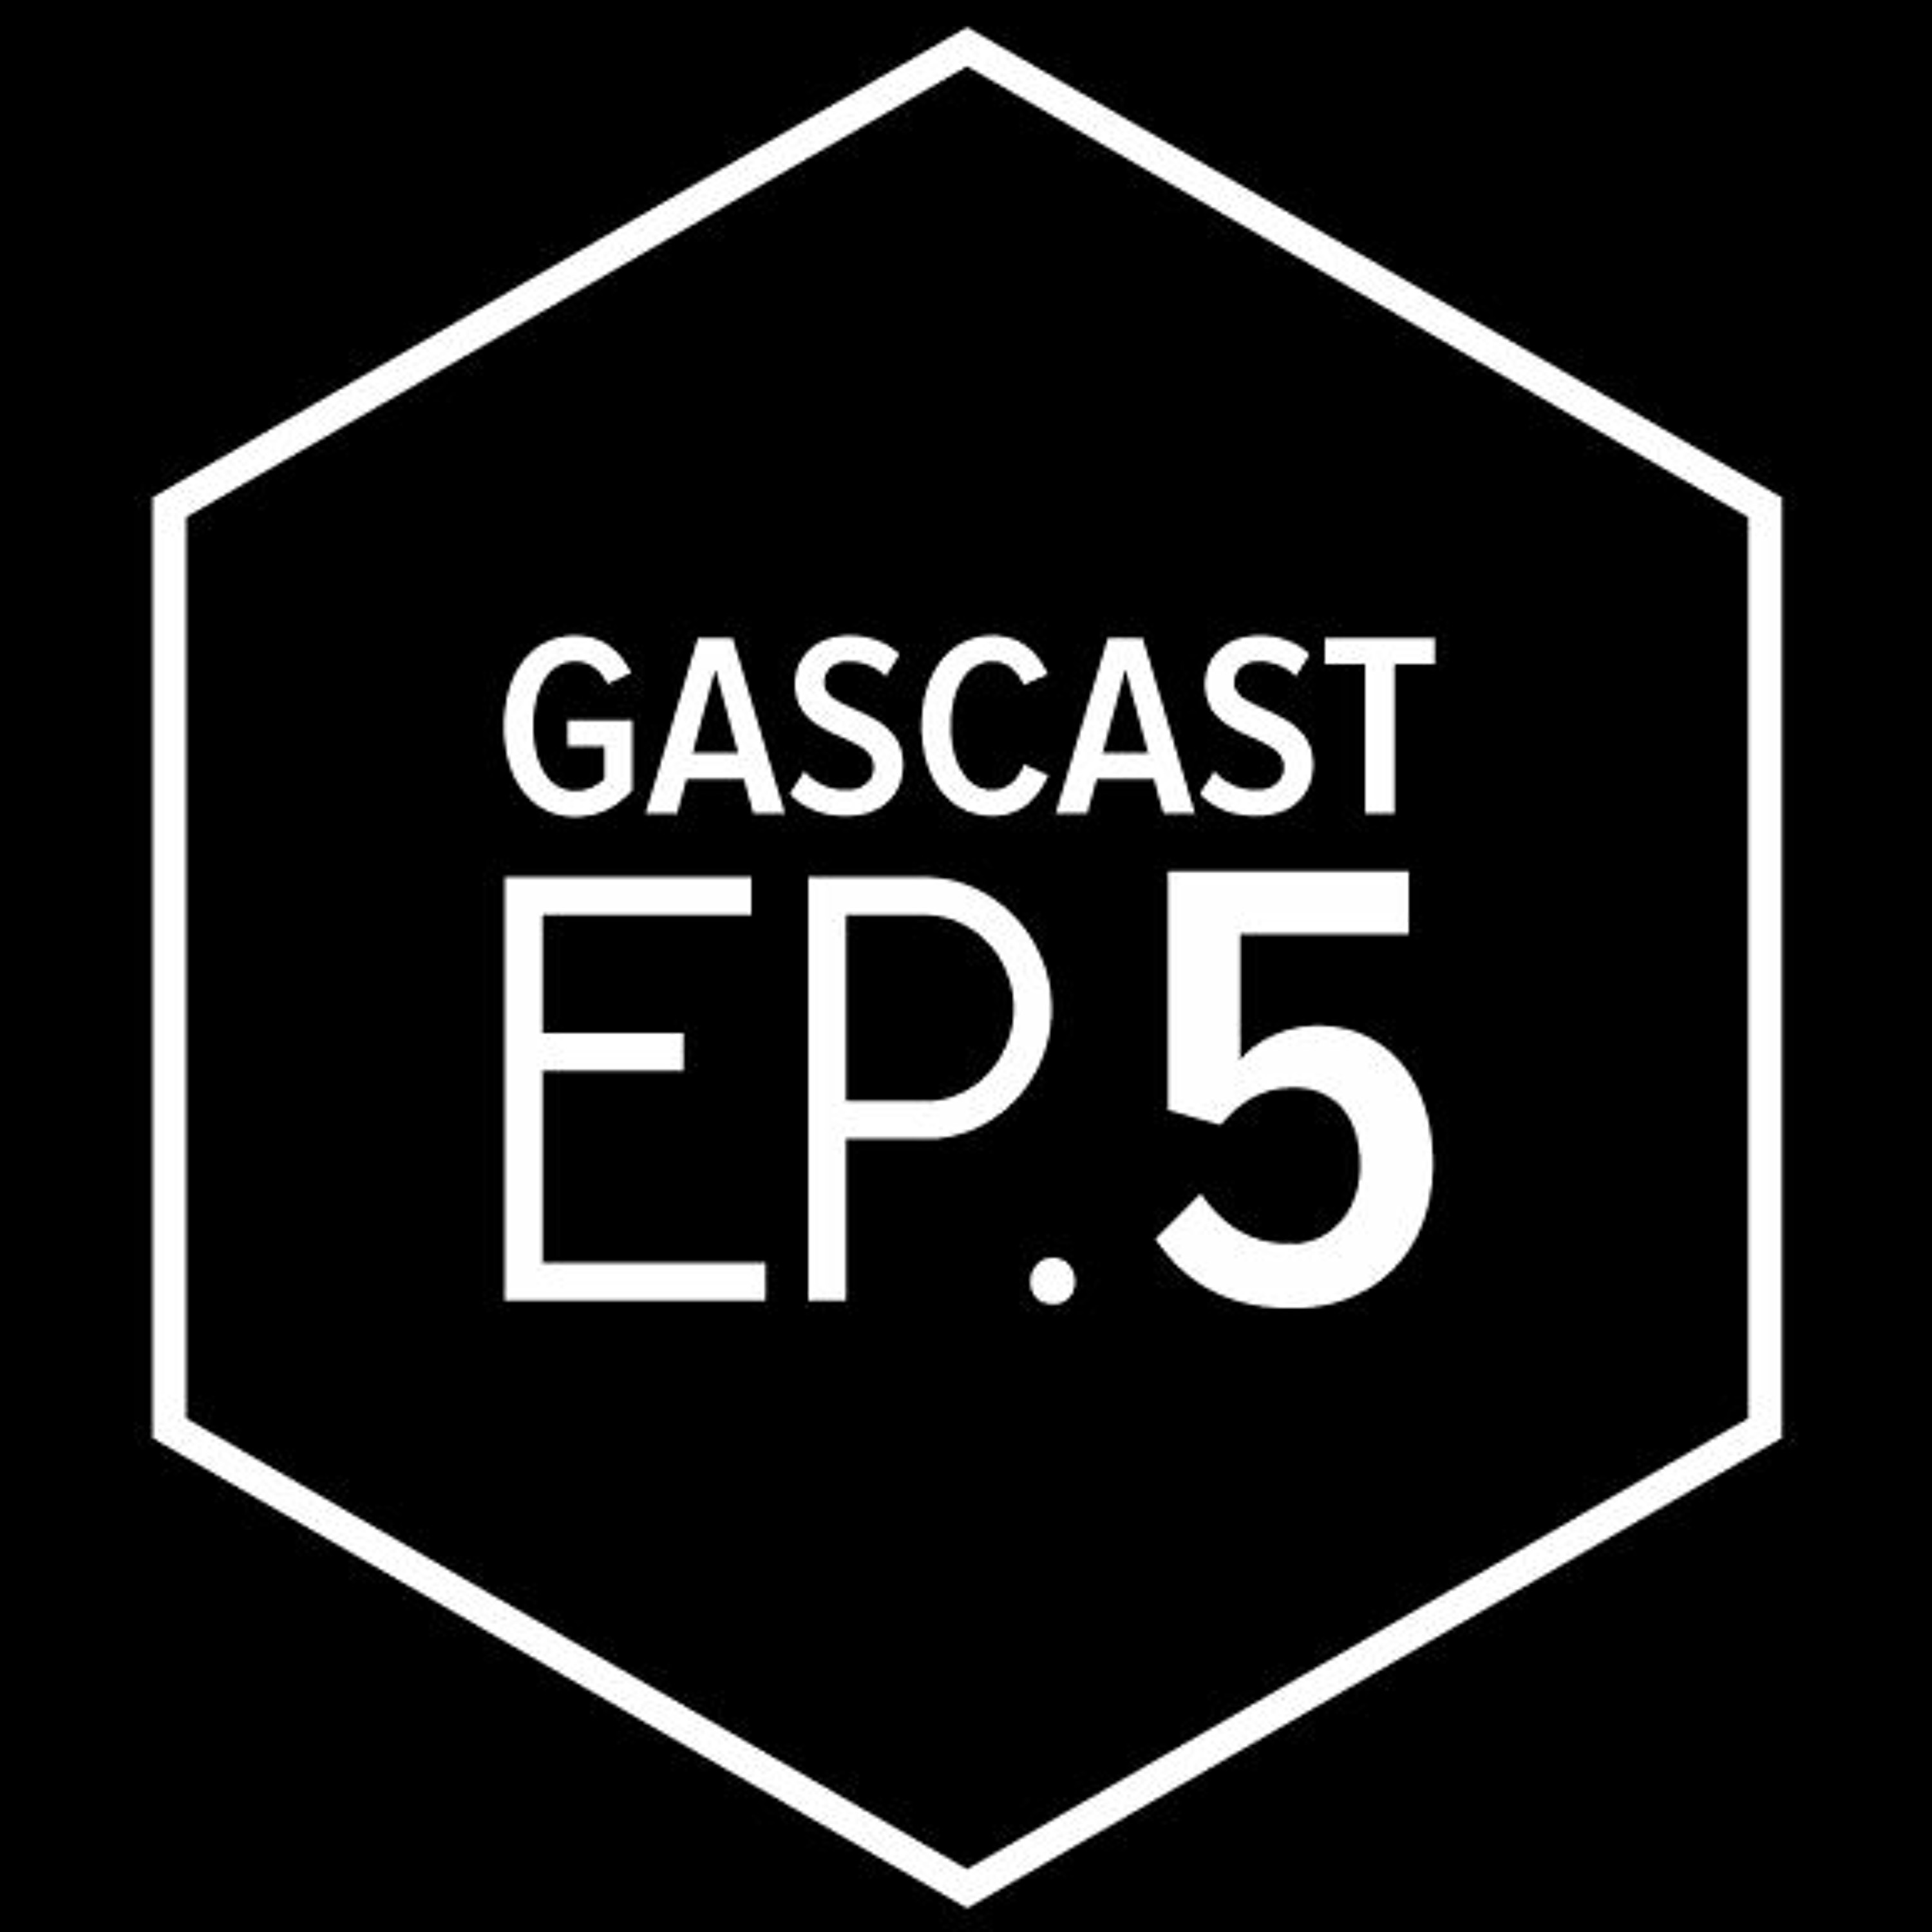 GASCAST Episode 5 : Ross Fletcher